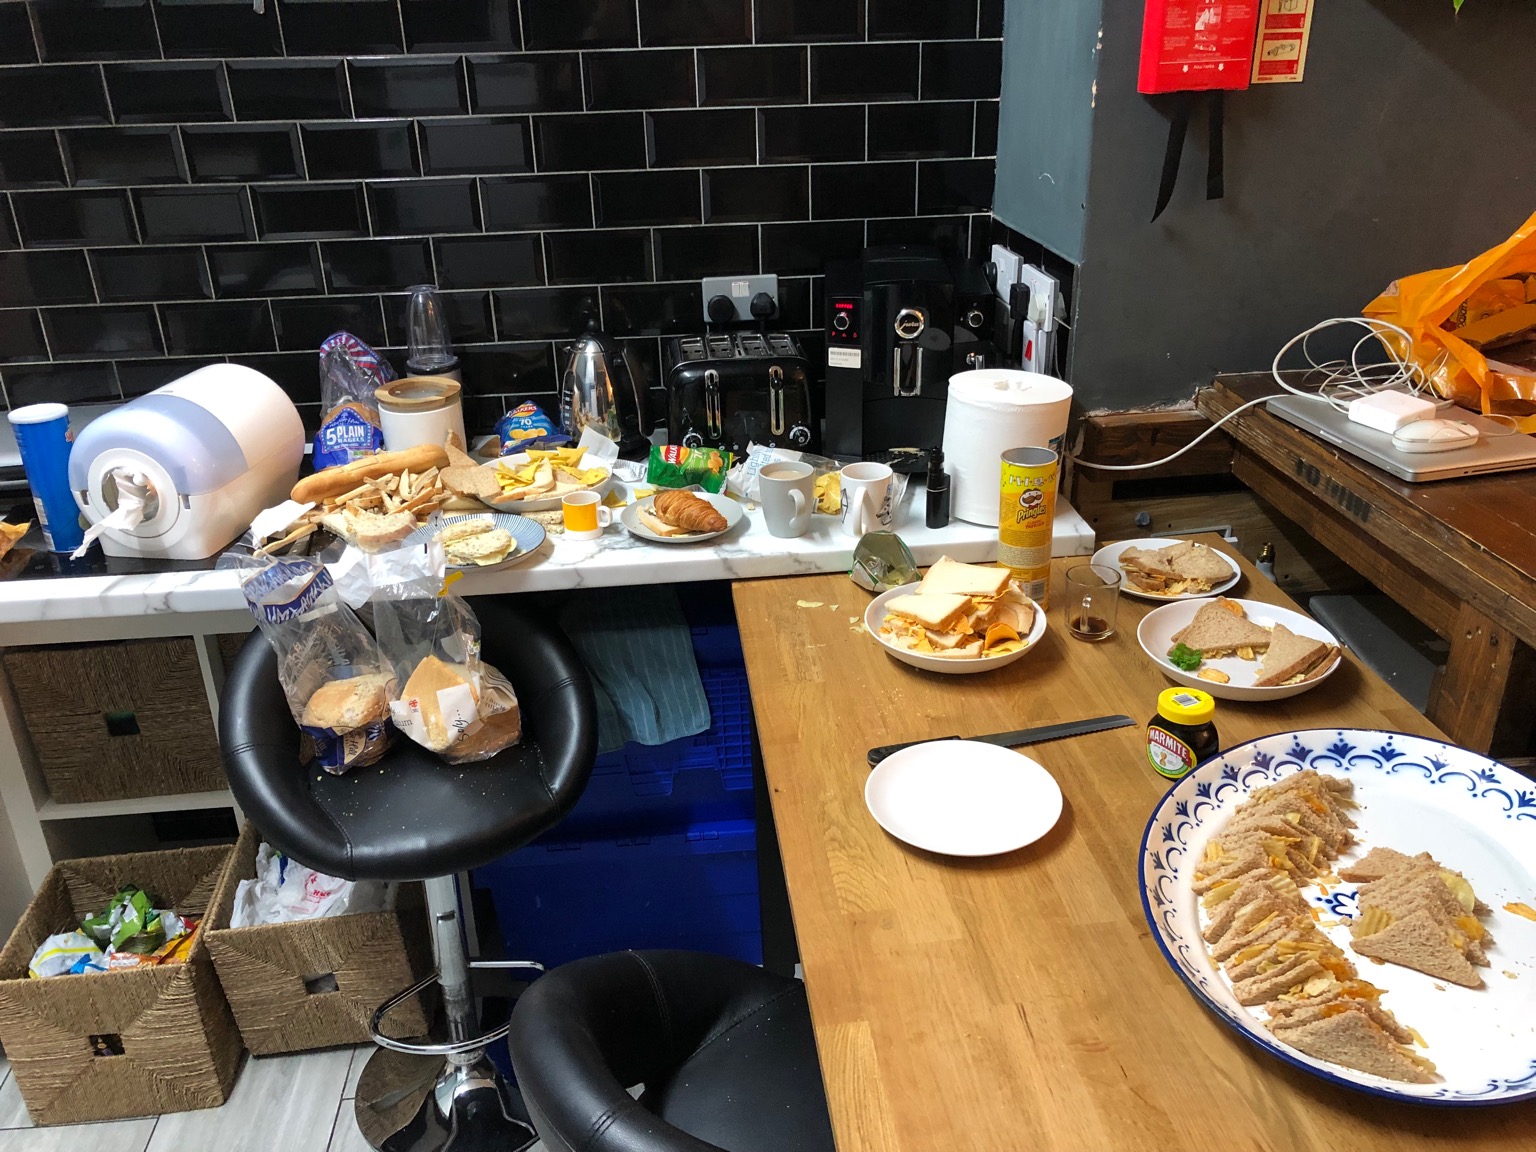 Kitchen scene featuring varied crisp sandwiches